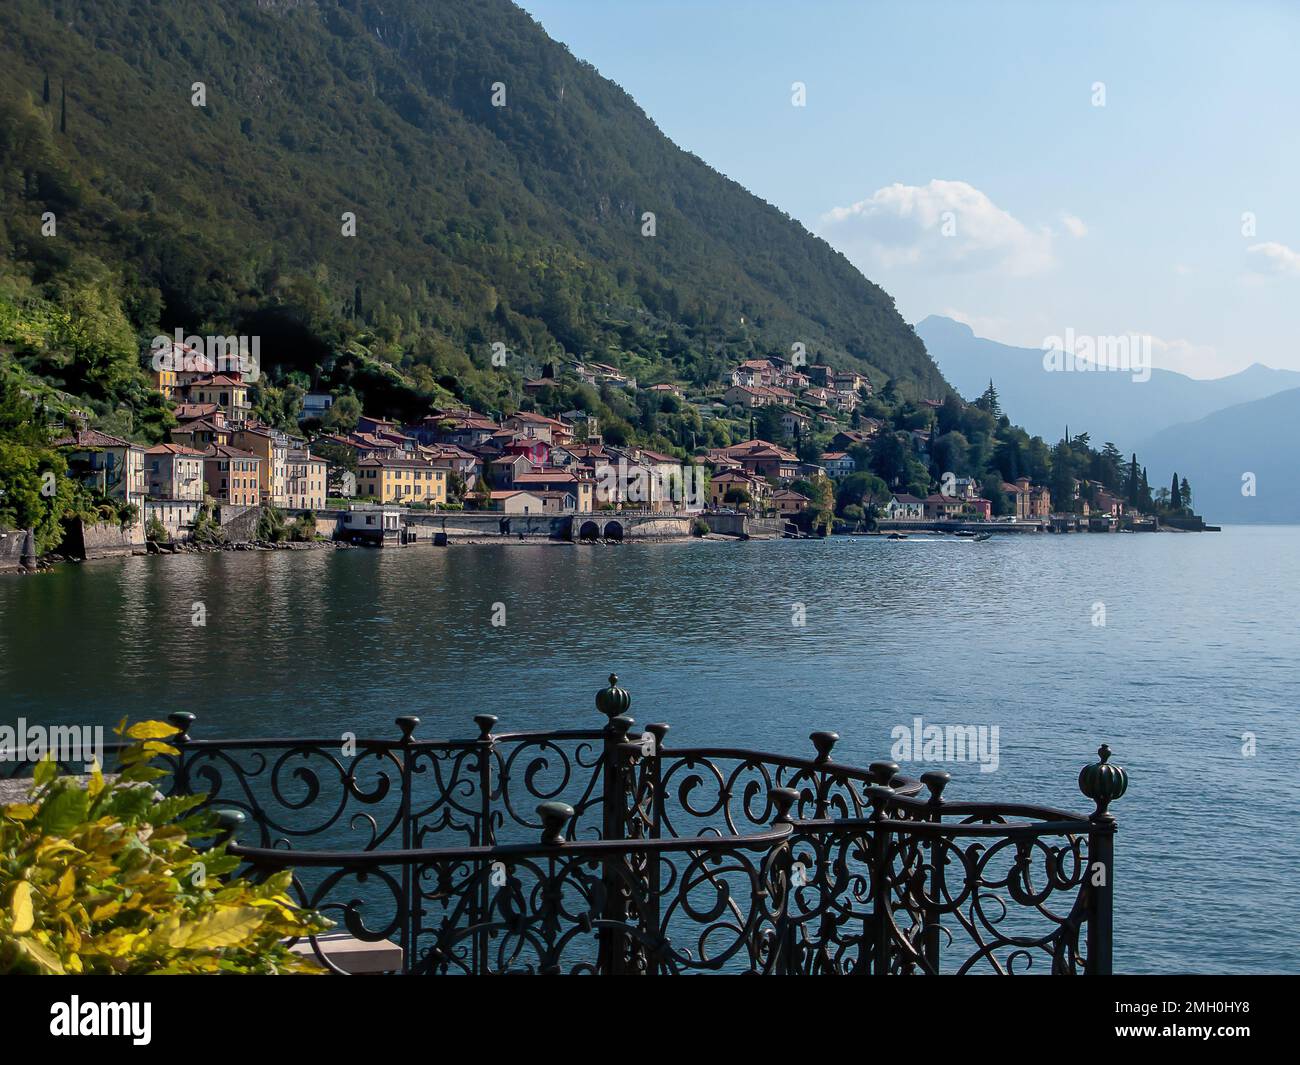 Vue panoramique sur le lac de Côme et les montagnes, villa Monastero, Varenna, lac de Côme, Lombardie, Italie Banque D'Images